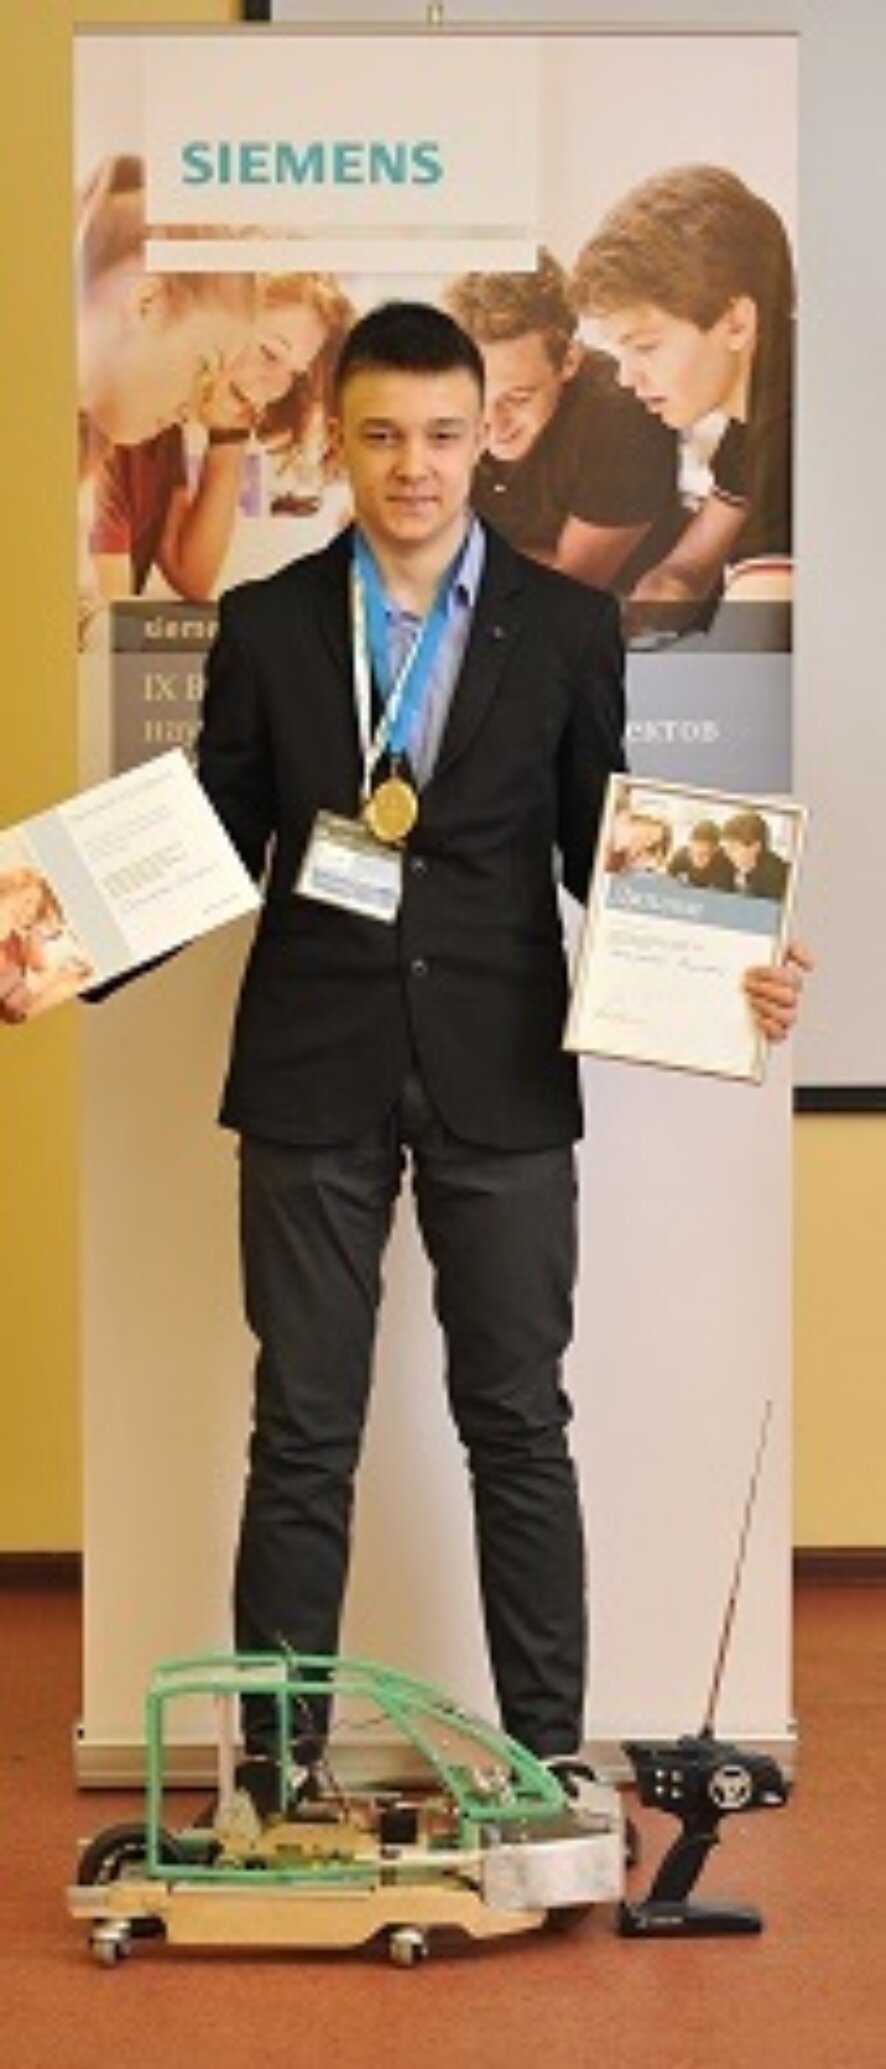 «Сименс» определил победителя регионального этапа конкурса для старшеклассников в Приволжском федеральном округе